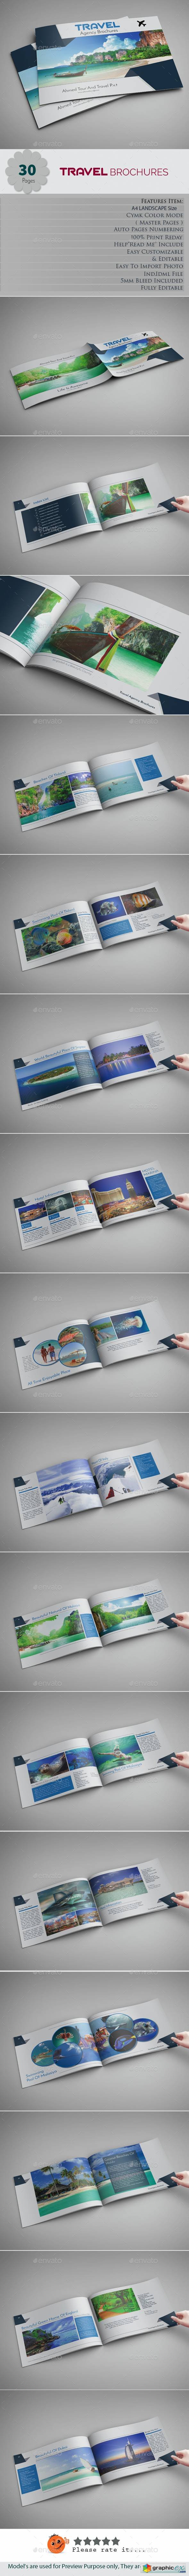 Travel Brochures 20134204